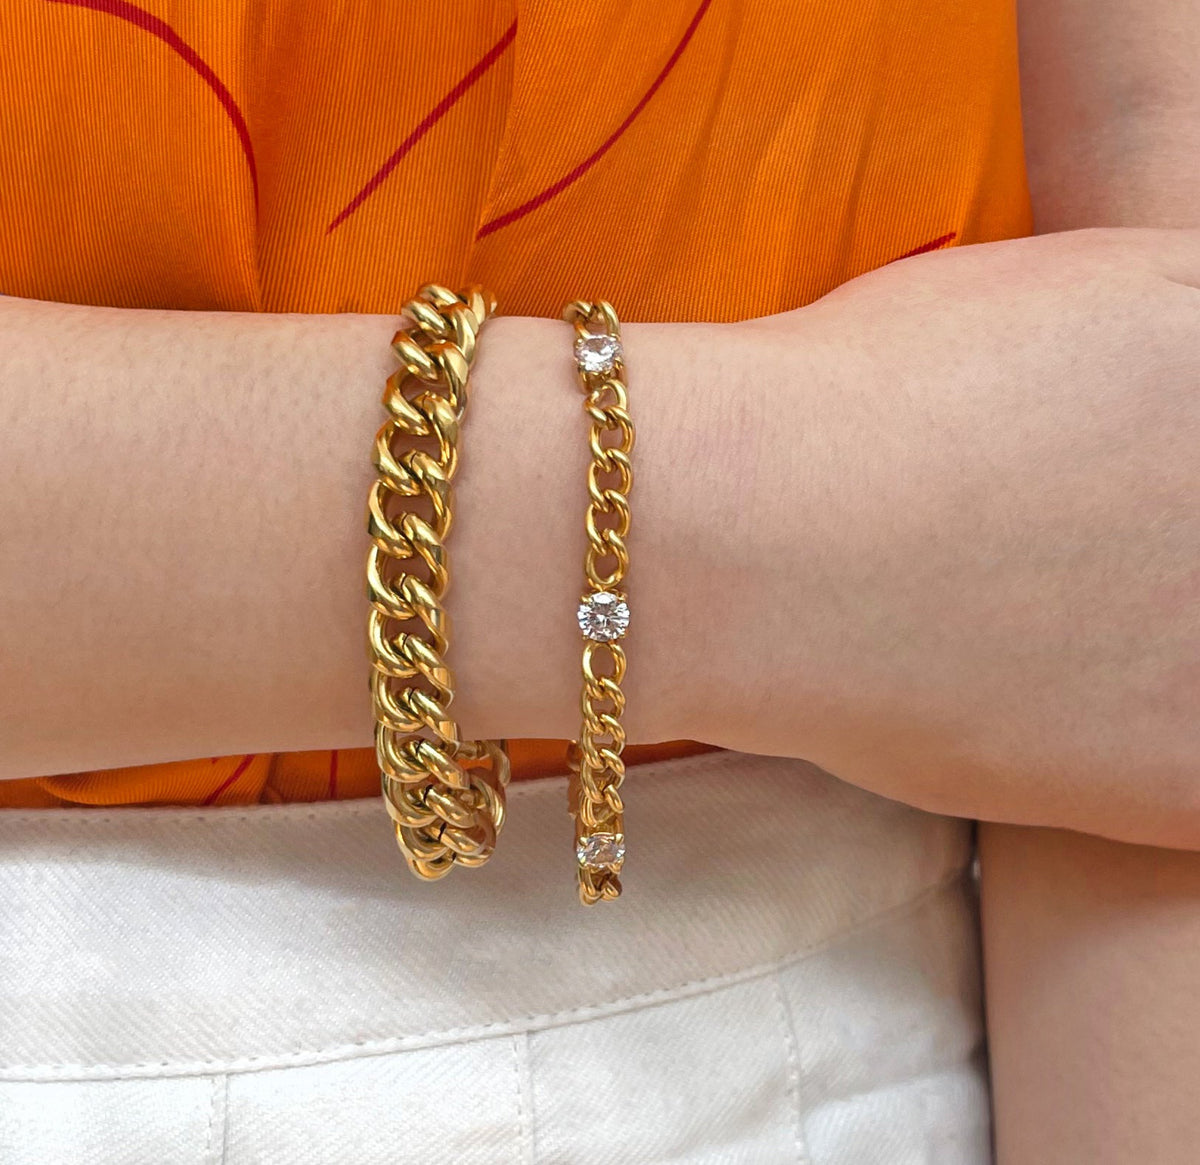 gold chain bracelets waterproof jewelry